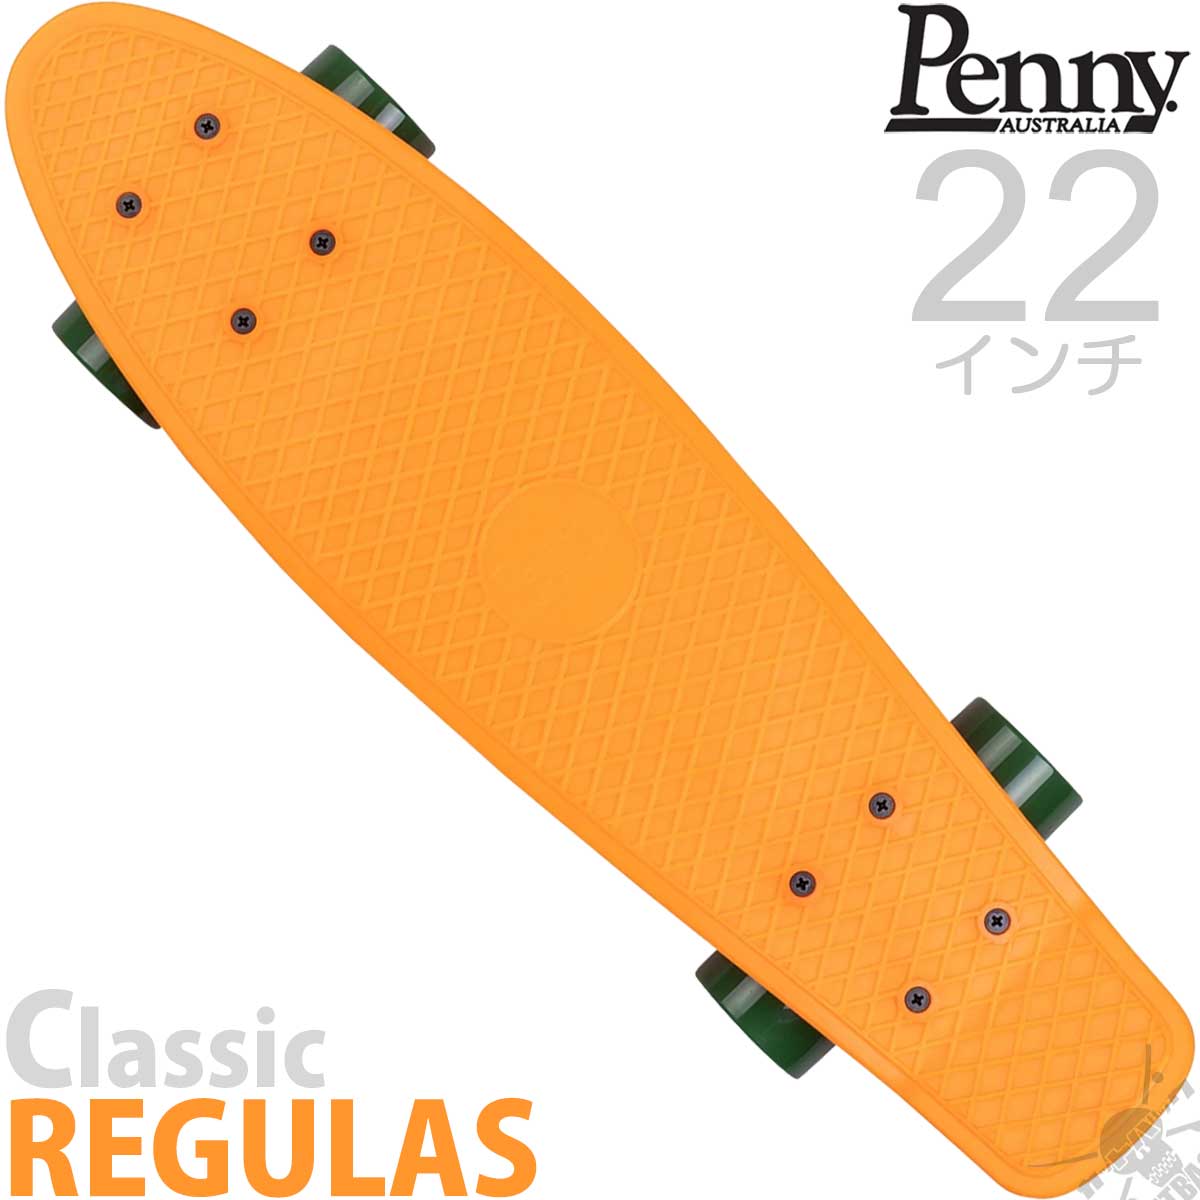 おしゃれ 最新モデルなので友達とかぶらない スケートボード かわいいカラフルスケートボード クルーザースケボー 送料無料 ペニースケートボード 人気 ニューカラー スケートボード インラインスケート 小さいほうの22インチ クラシック Classic Penny 22インチ レグルス